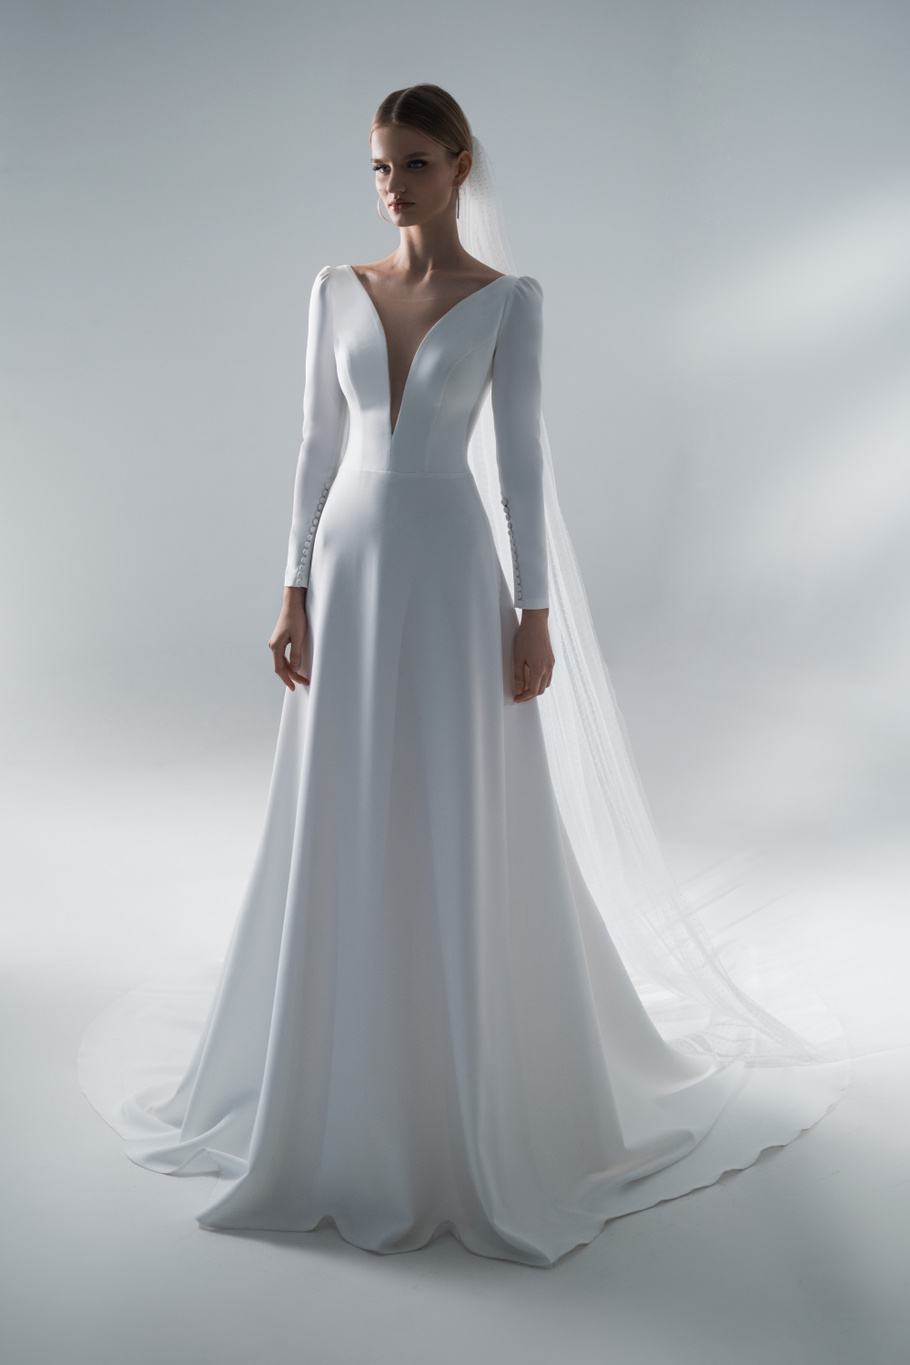 Купить свадебное платье «Фани» Стрекоза из коллекции 2021 года в салоне «Мэри Трюфель»